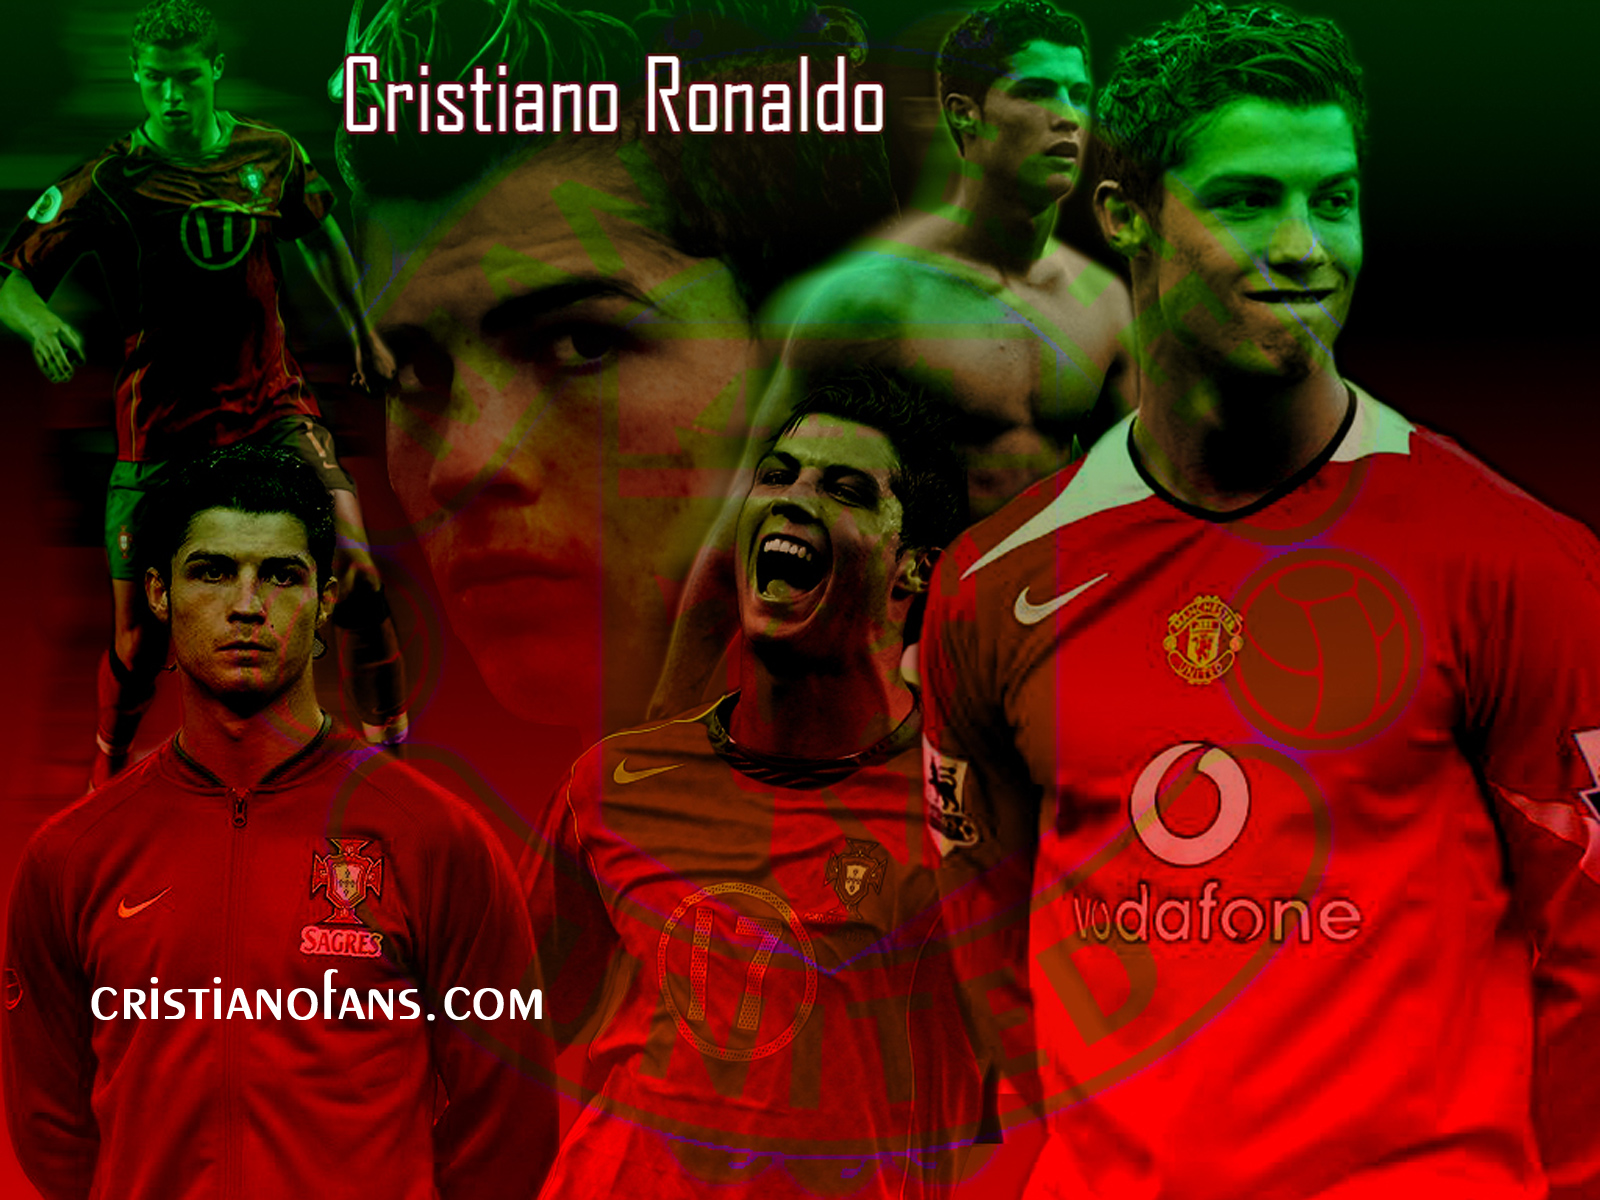 http://2.bp.blogspot.com/-C_3-71NsjAY/Td2oMMTaQOI/AAAAAAAAAOw/_iIWFs-p_Fk/s1600/Cristiano-Ronaldo-HD-Wallpapers-2010-3.jpg